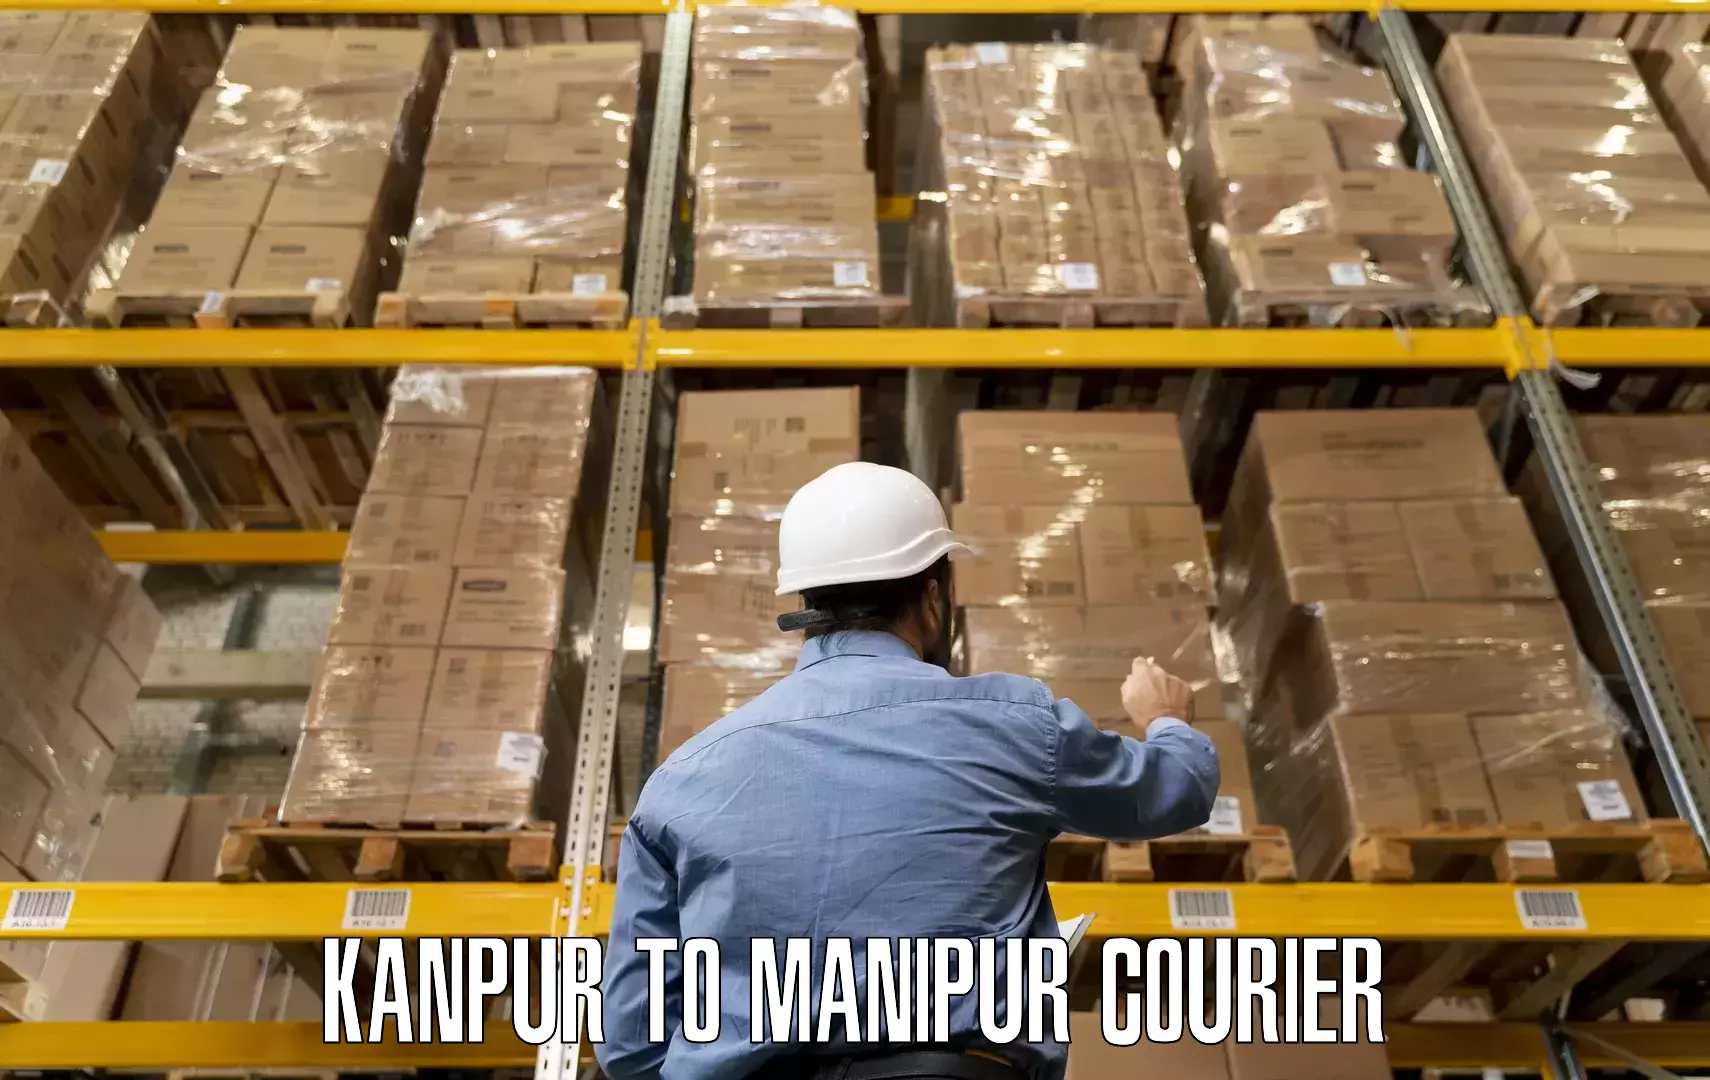 Furniture moving experts Kanpur to Kanti